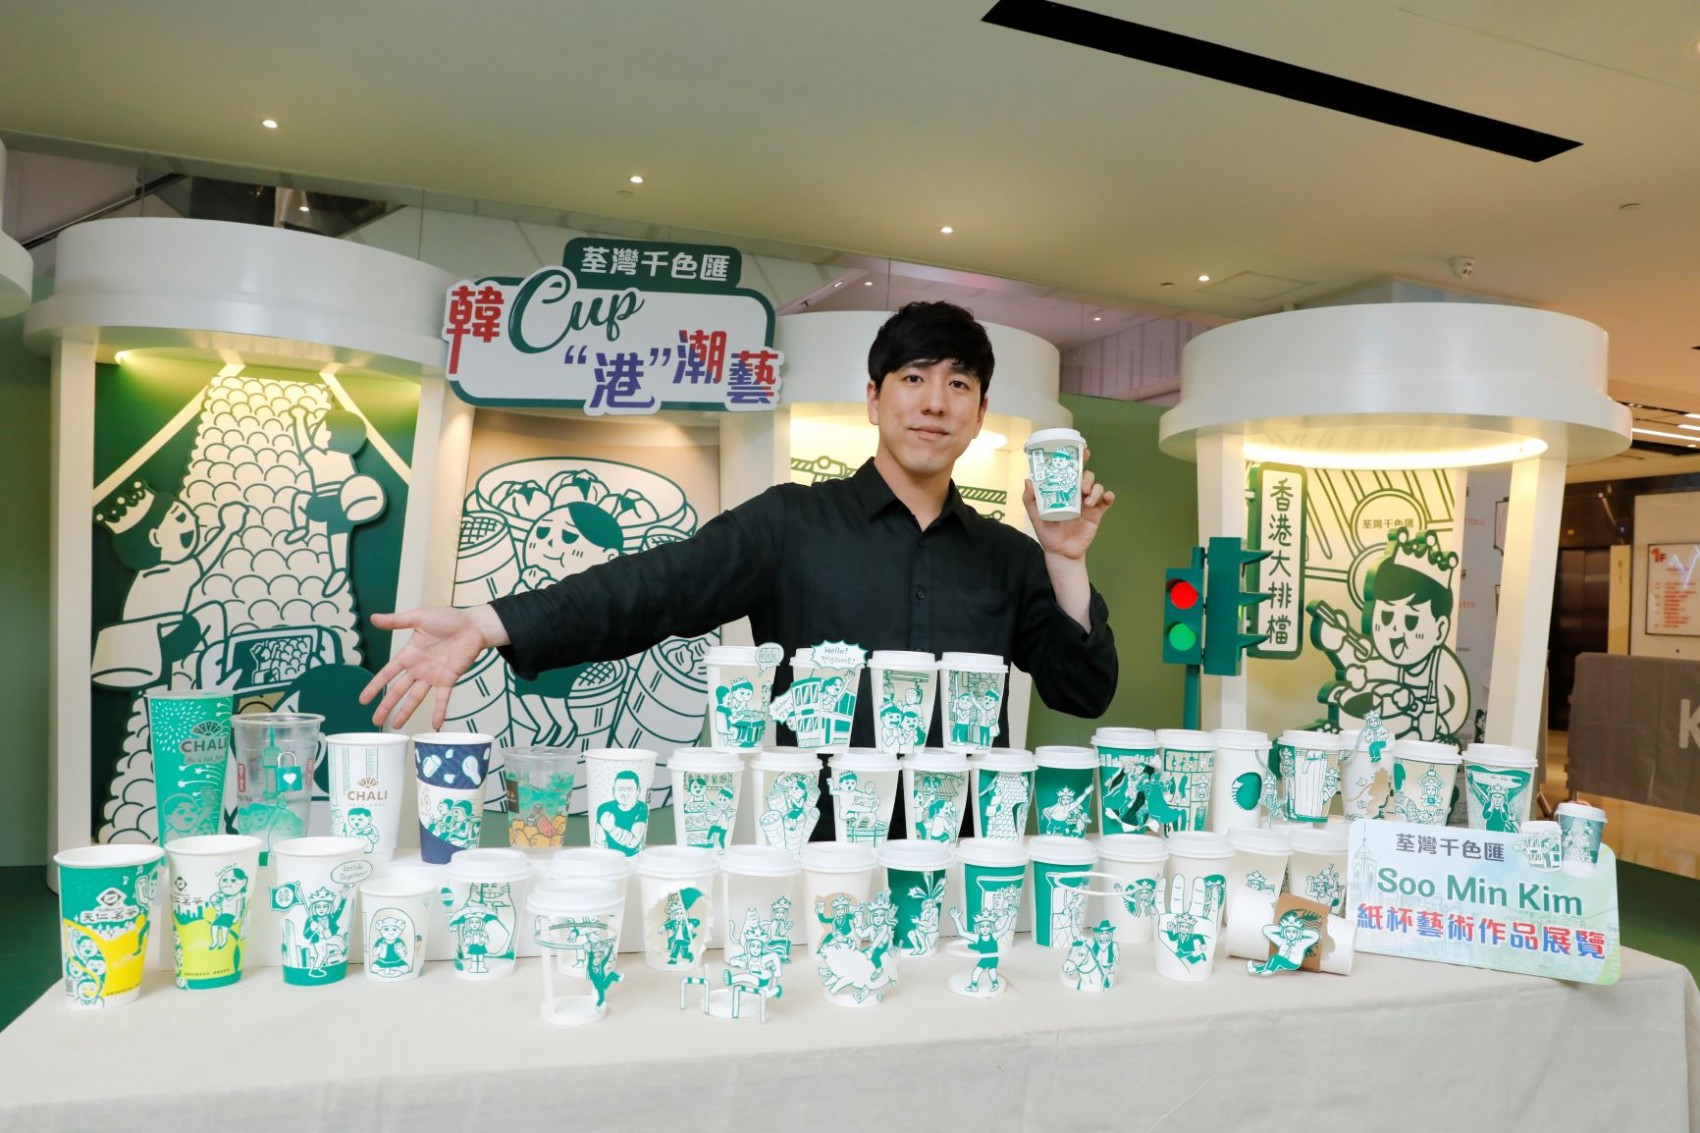 來自韓國的藝術家Soo Min Kim首次於商場內展出海外個人藝術展，除了帶來經典美人魚作品外，亦特意創作了香港本地吃喝玩樂情懷系列咖啡杯，呈現他對香港的第一印象。